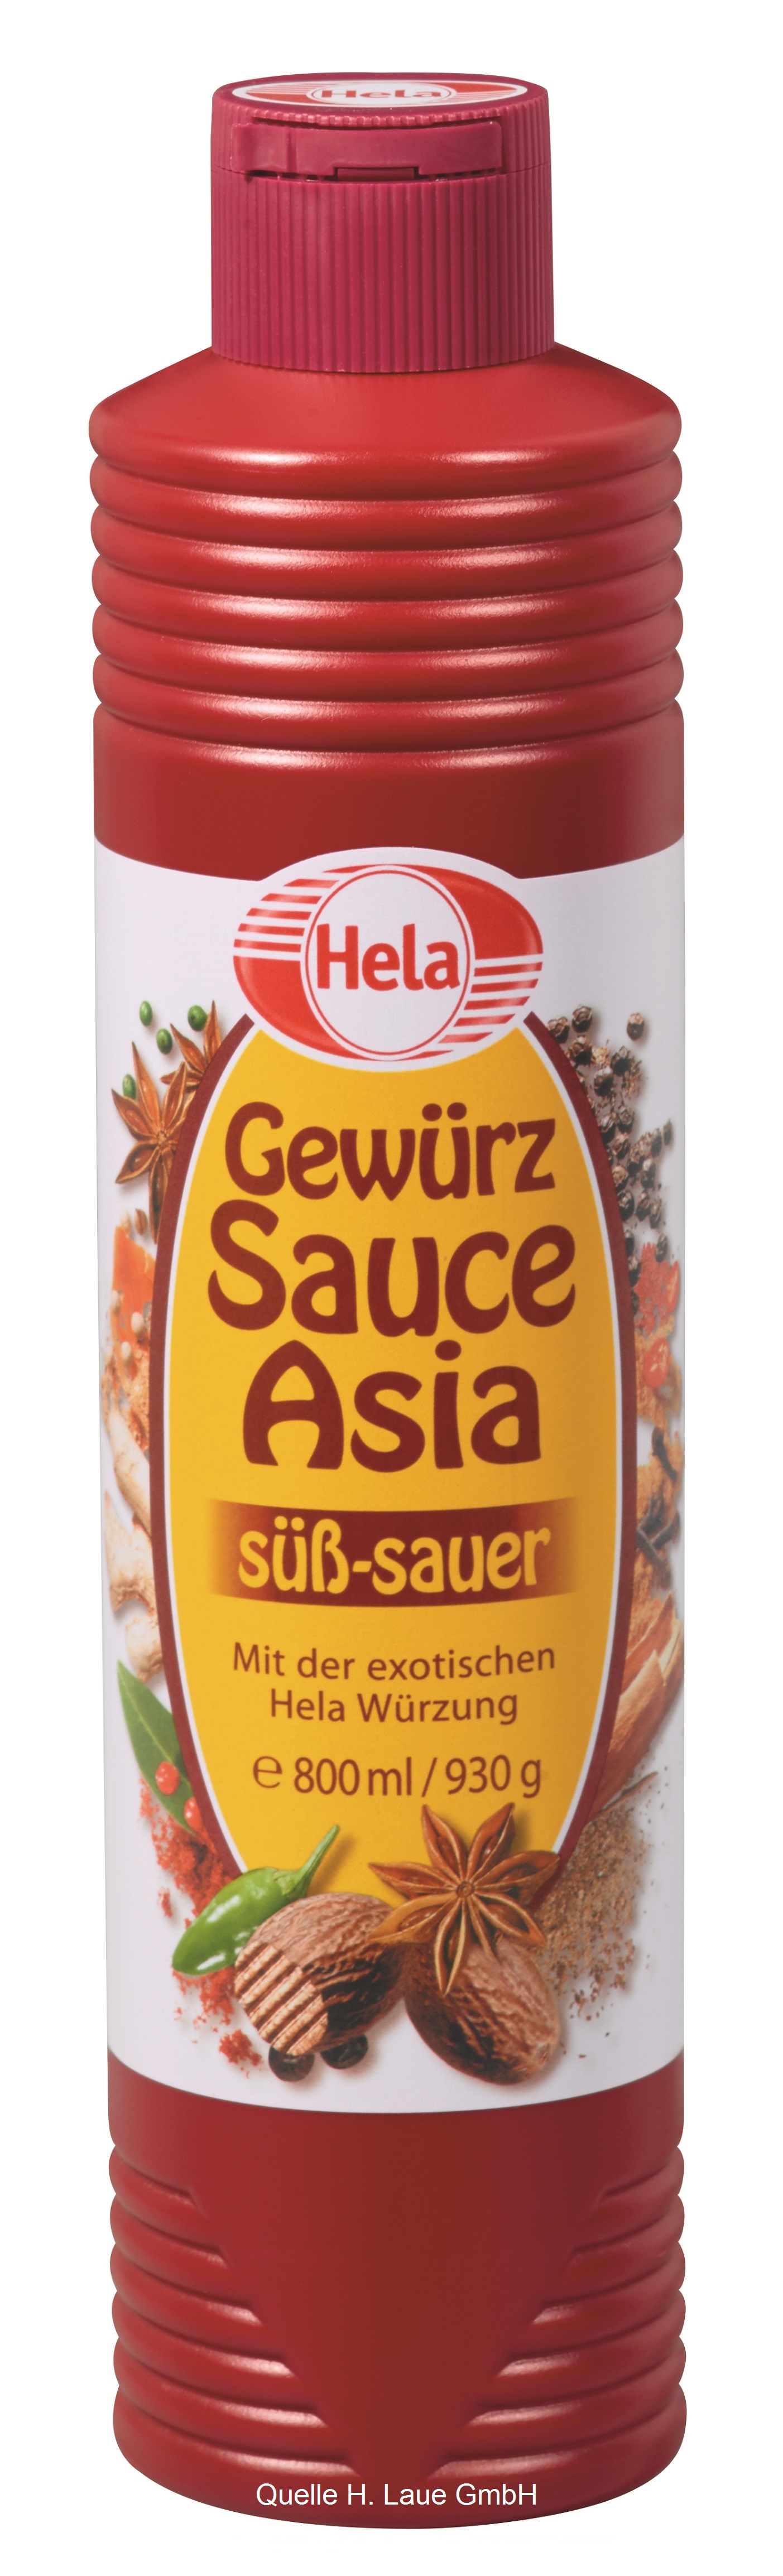 Hela, Gewürz Sauce, Asia, 800ml, Flasche